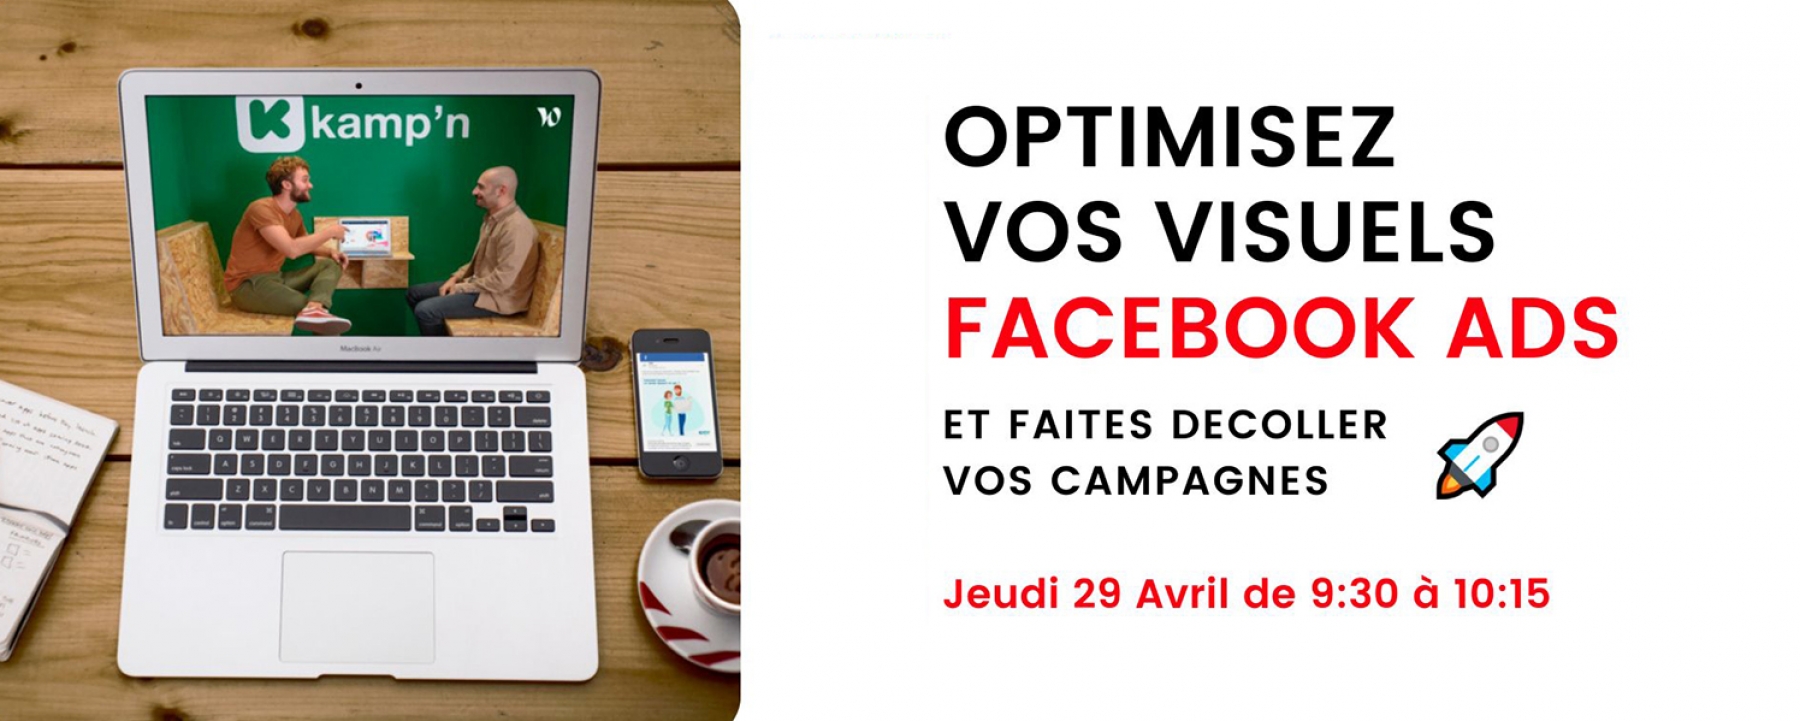 Optimiser ses visuels Facebook Ads & Instagram Ads, organisé par Kamp'n le 29 avril